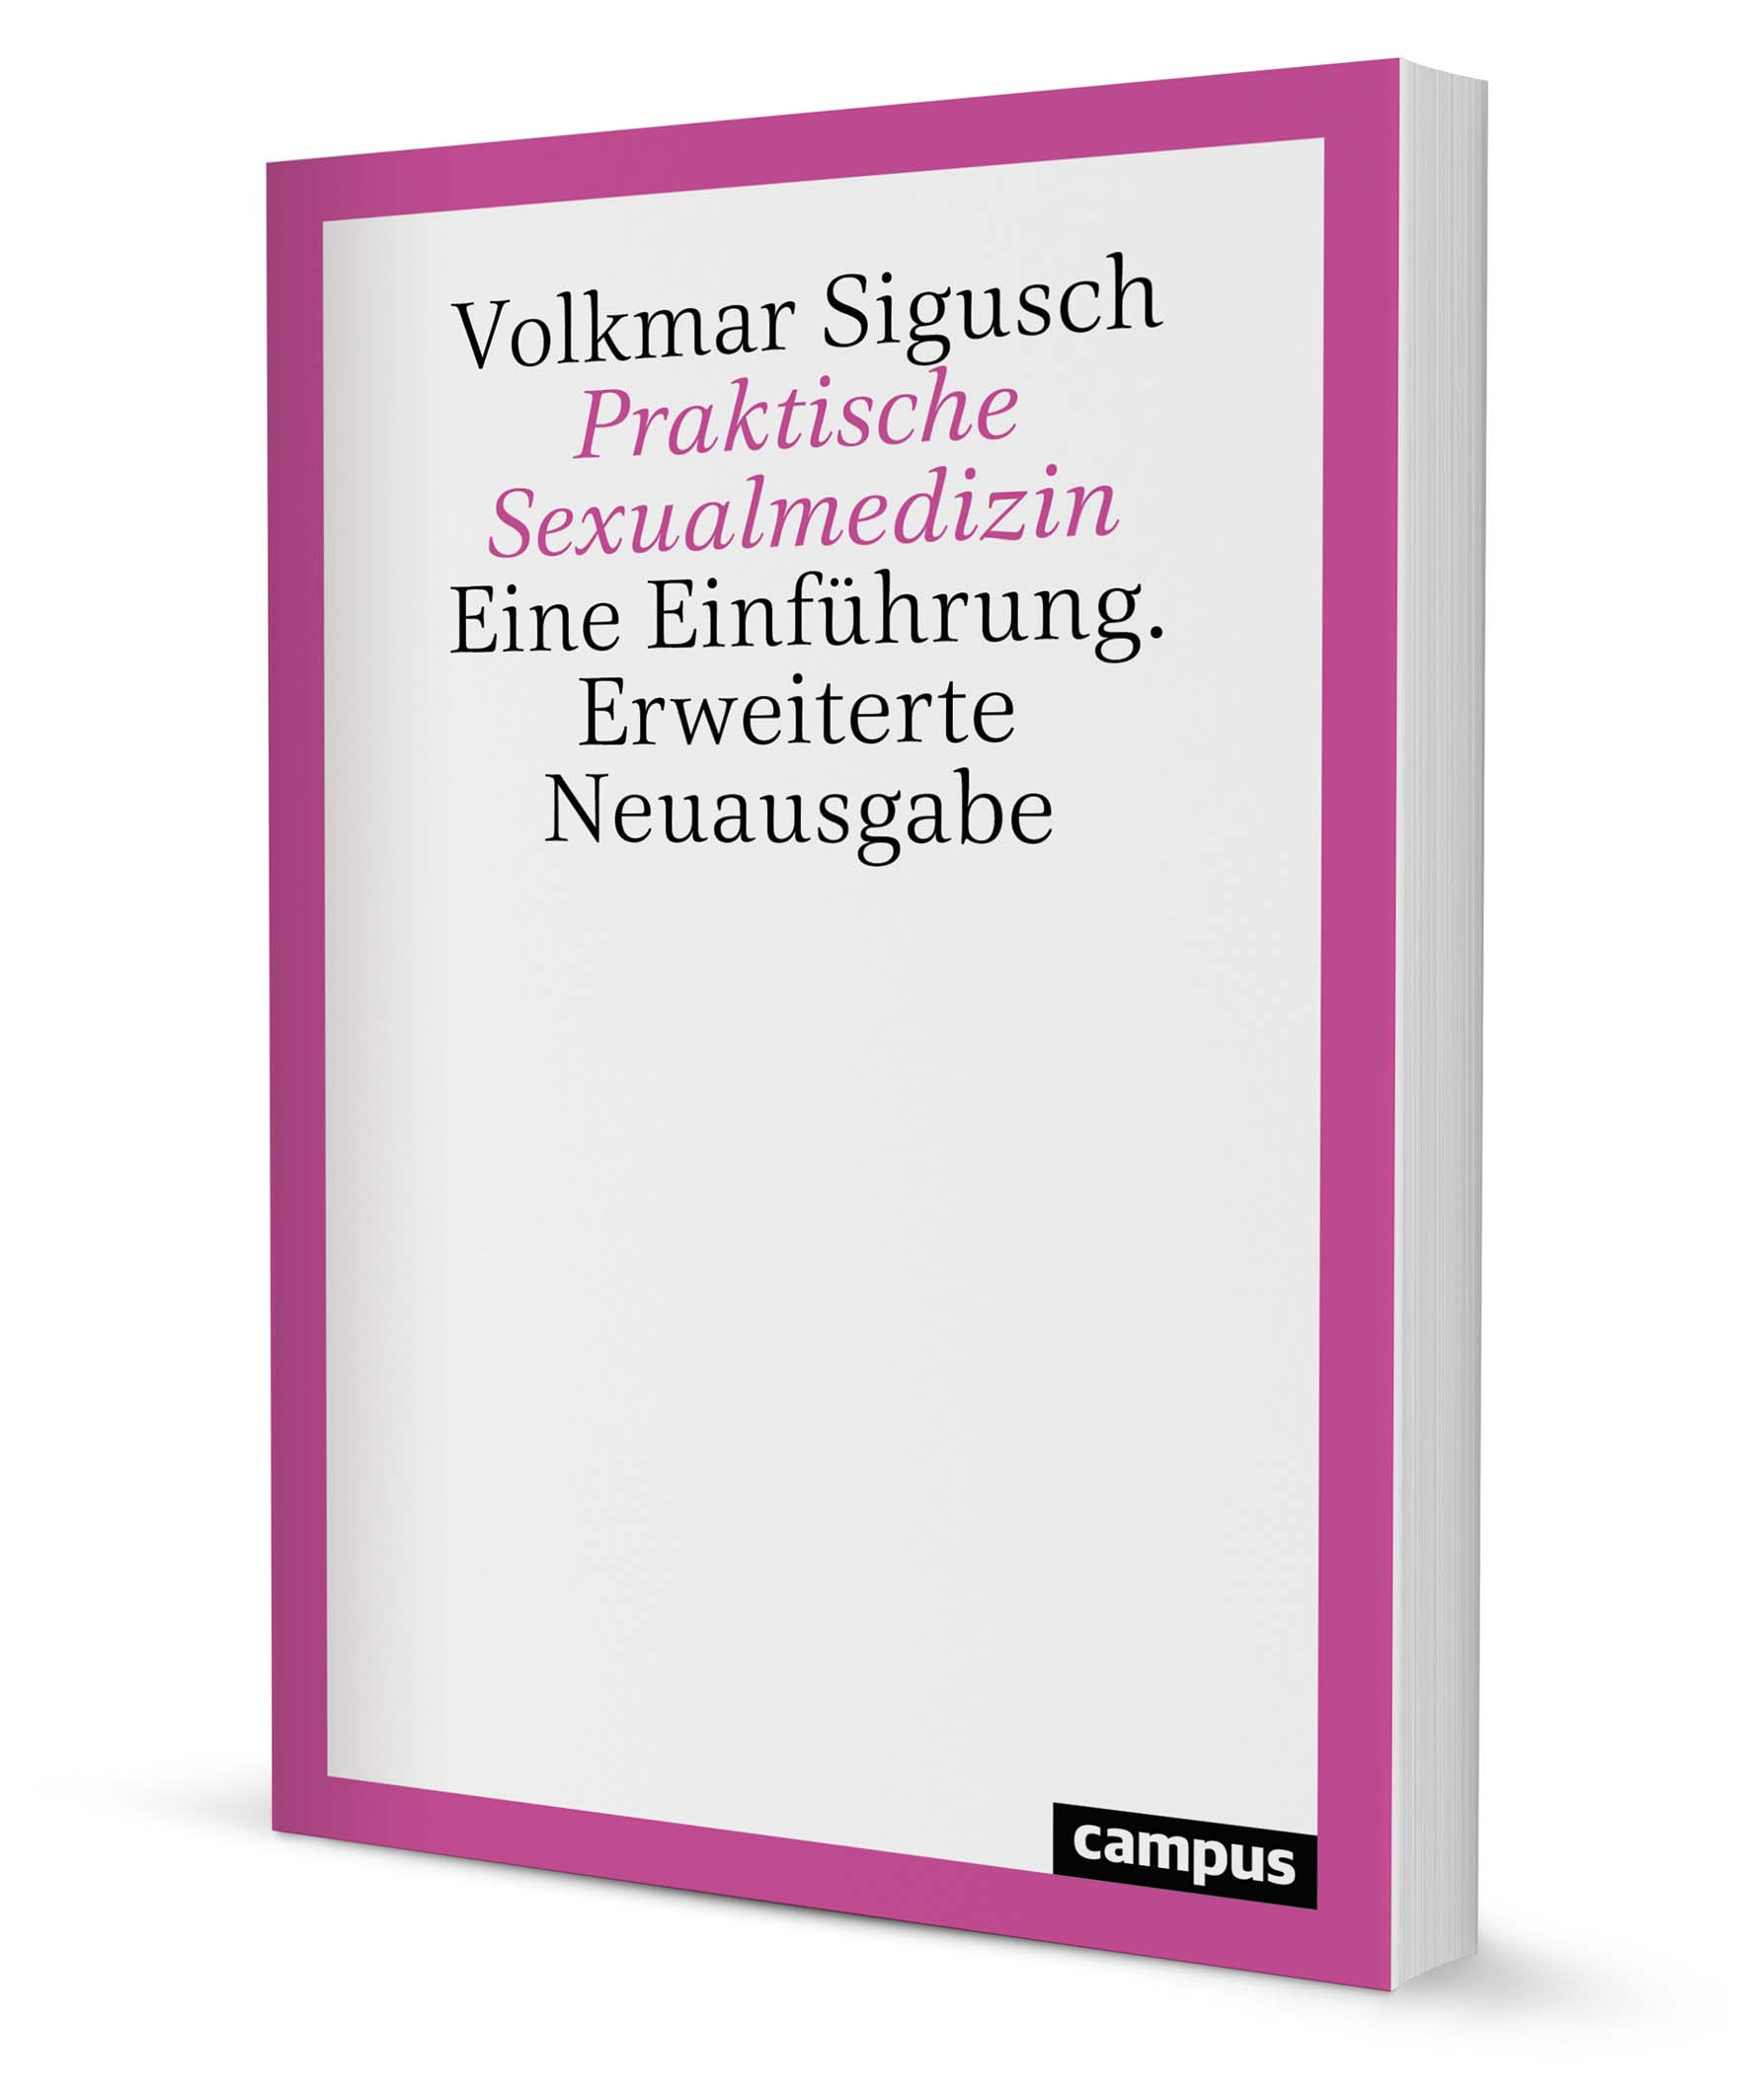 Praktische Sexualmedizin Ein Buch Von Volkmar Sigusch Campus Verlag